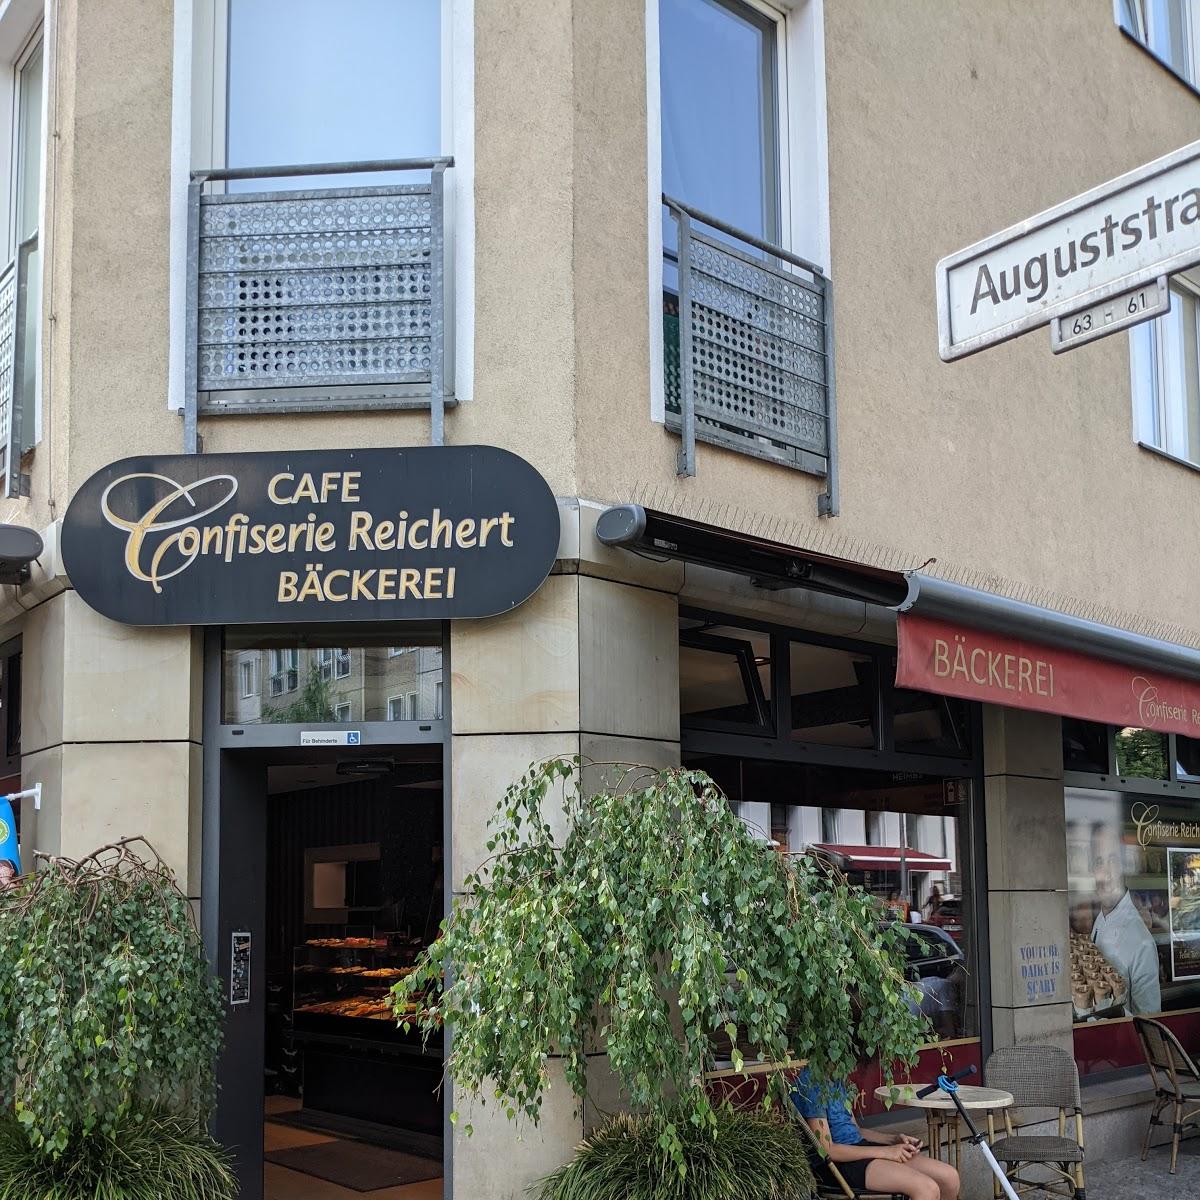 Restaurant "Confiserie Reichert" in Berlin